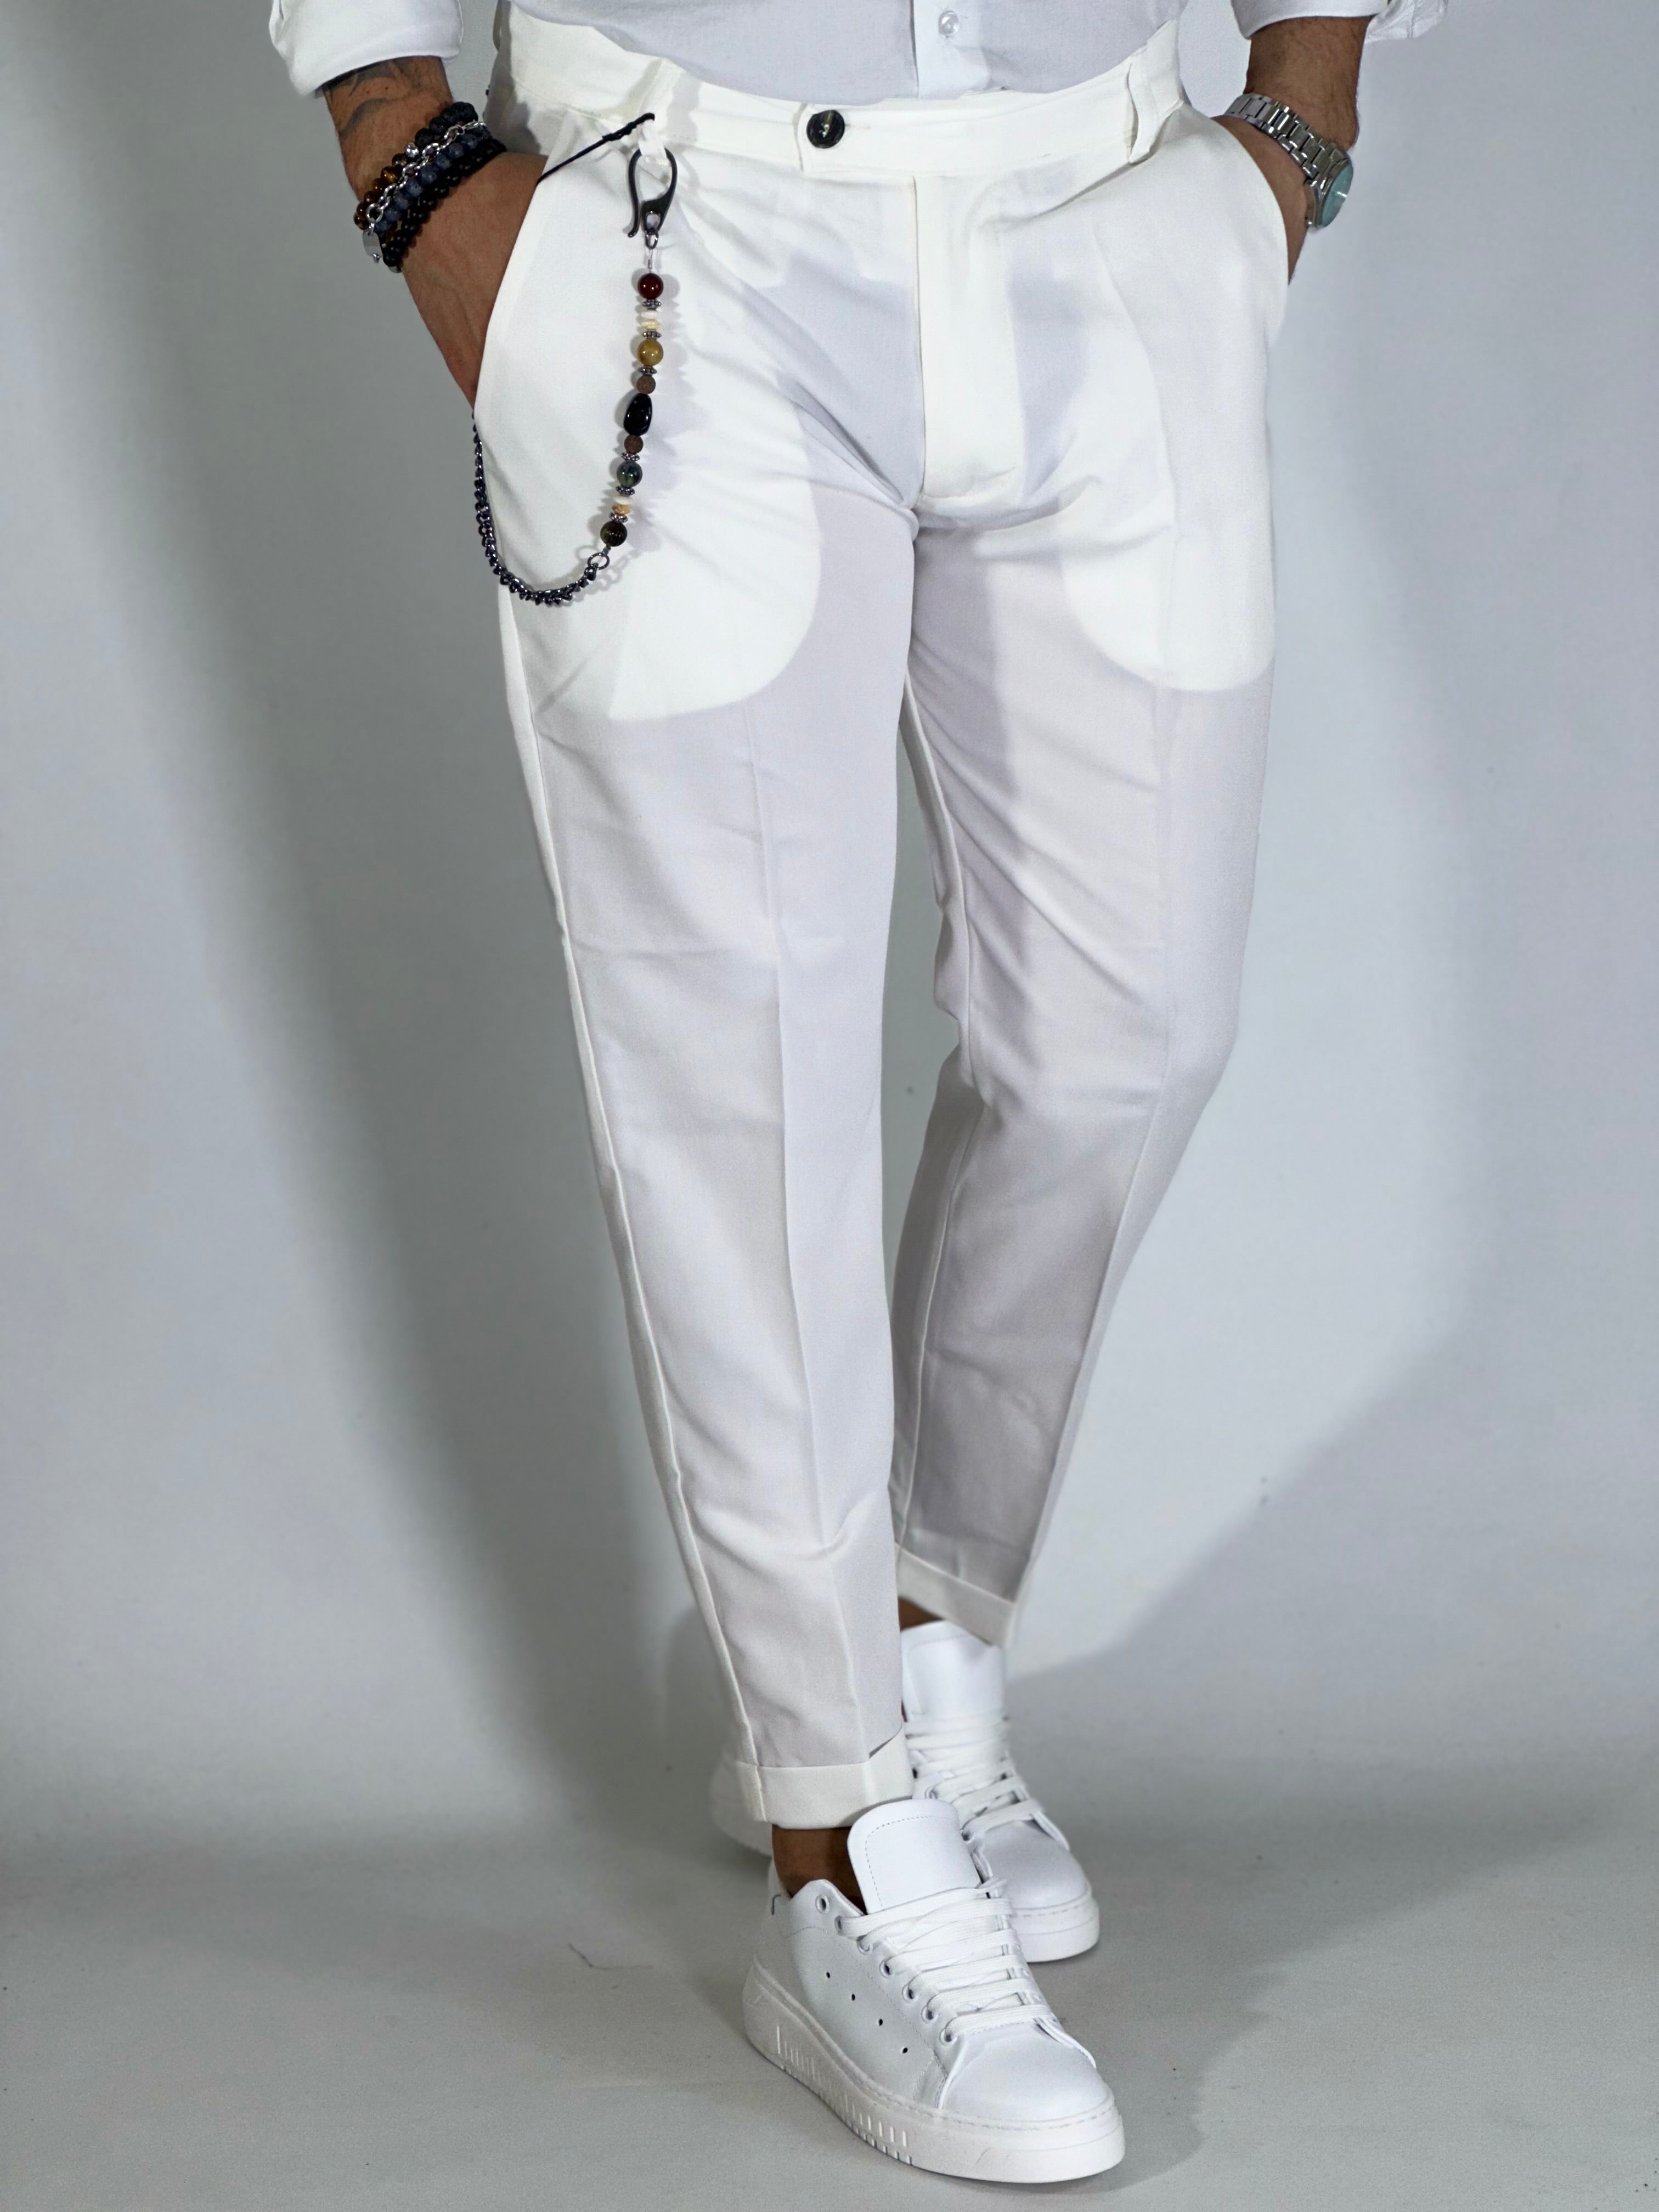 Pantalone elegant bianco AG95